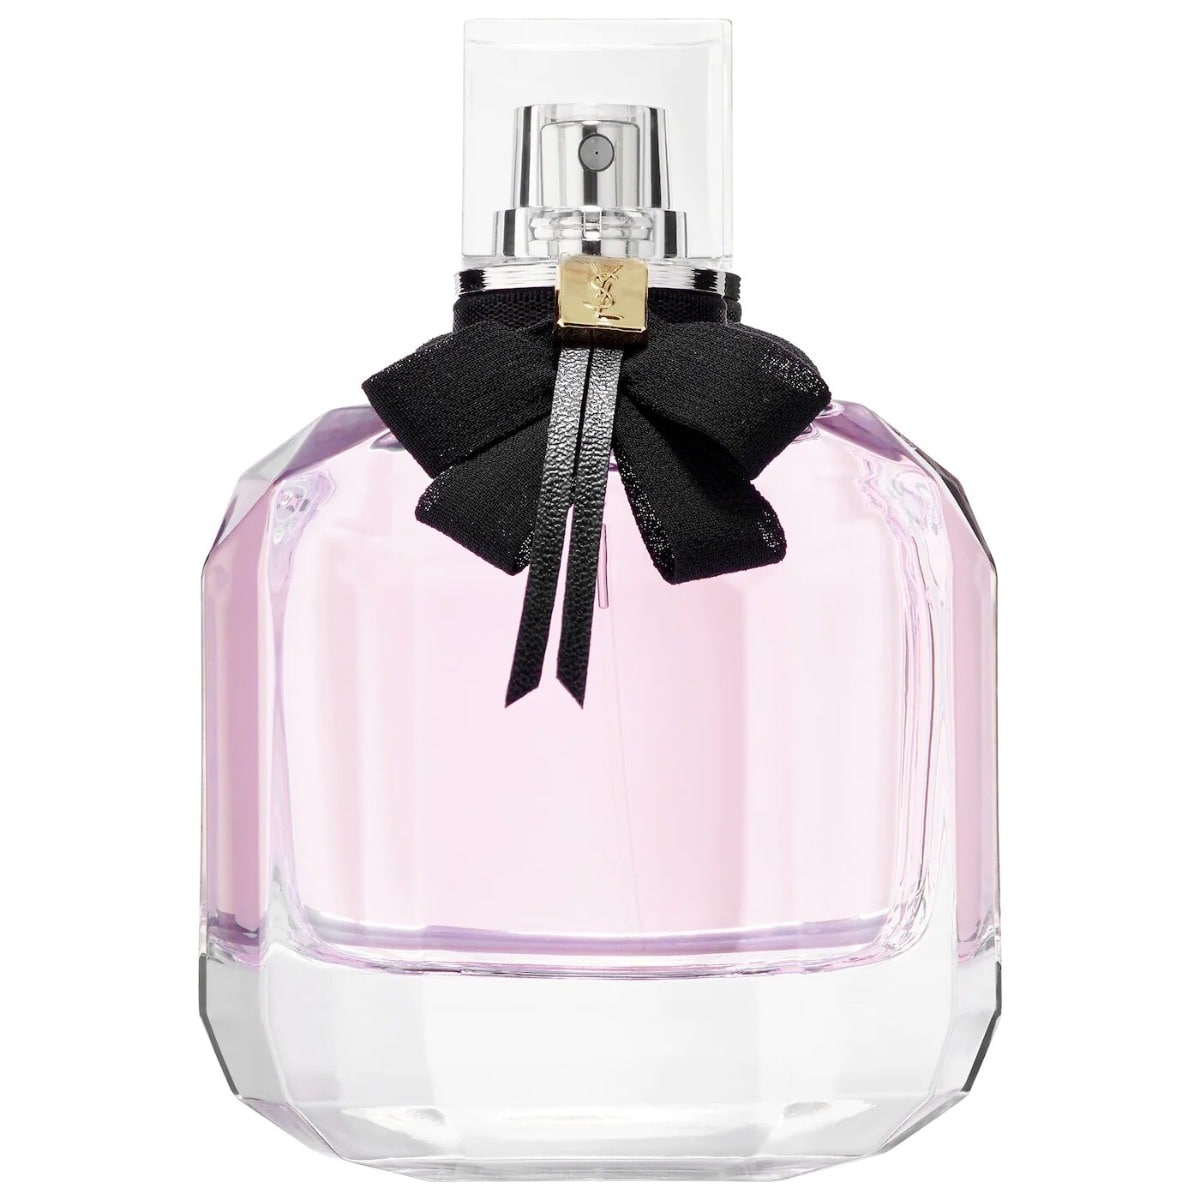 Yves Saint Laurent Mon Paris For Women Edp 90 ml-Perfume - Allurebeautypk